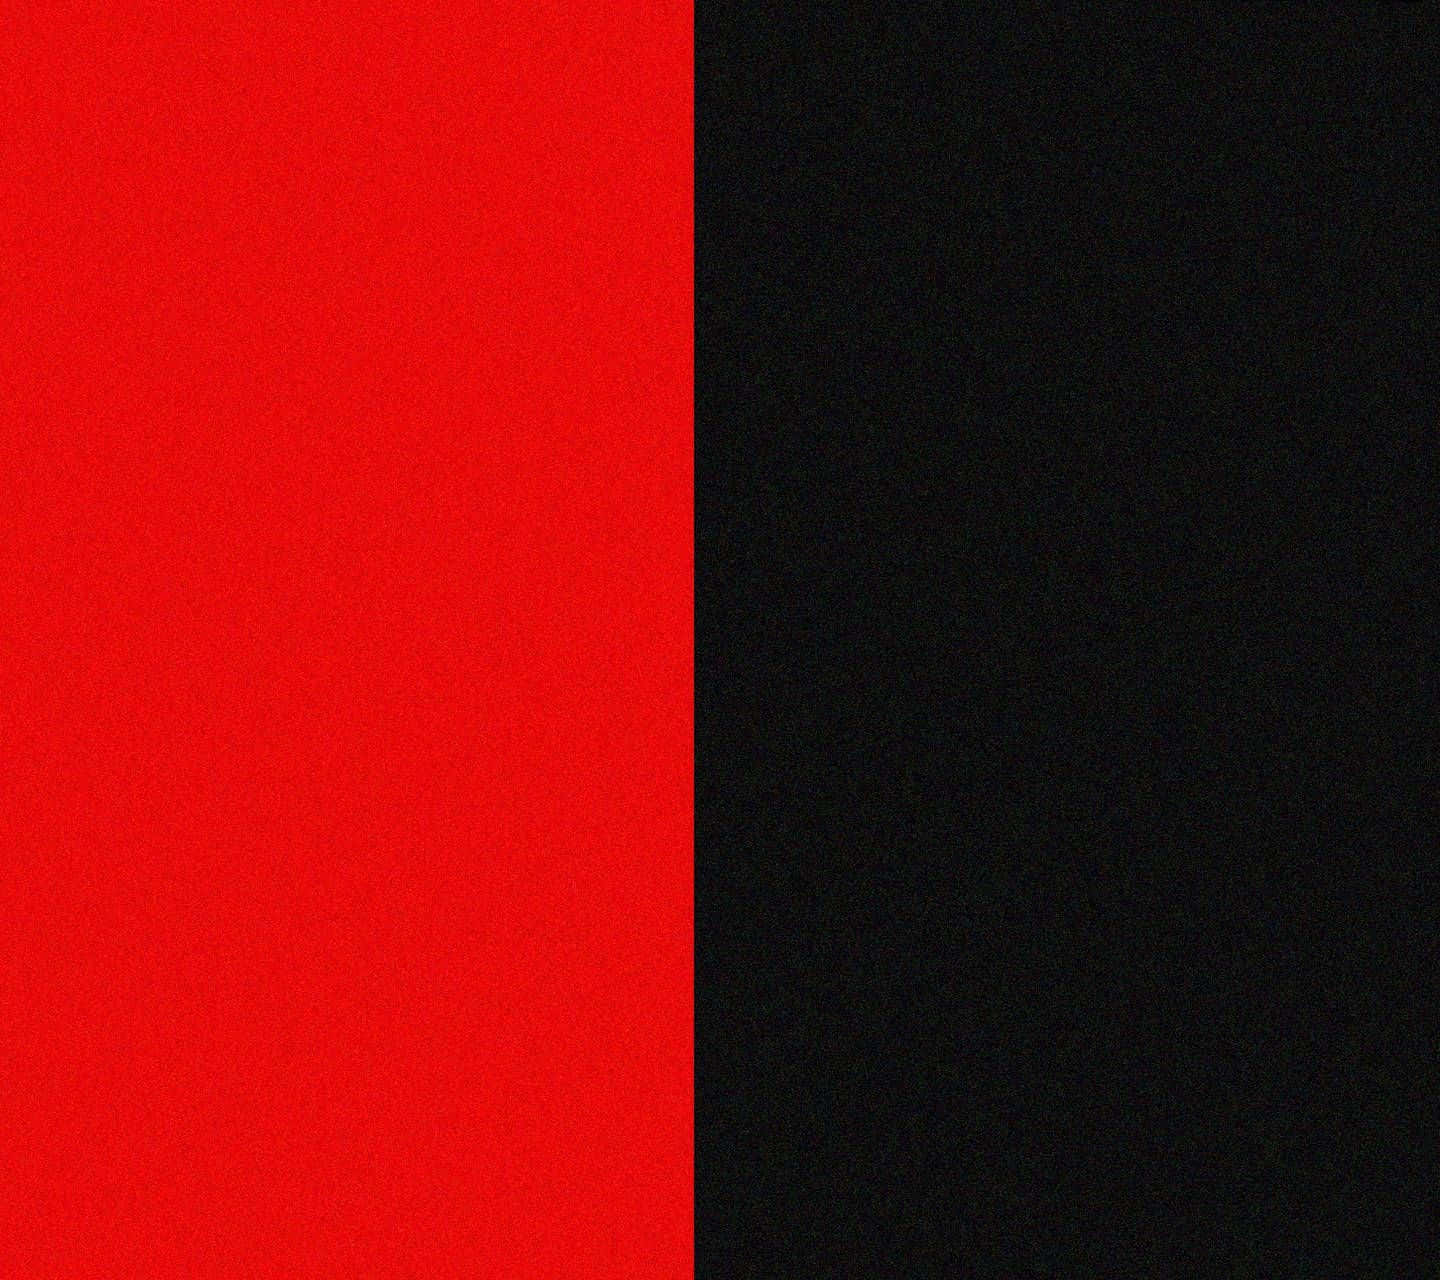 Unfondo Negro Y Rojo Con Un Fondo A Rayas Negro Y Rojo Fondo de pantalla